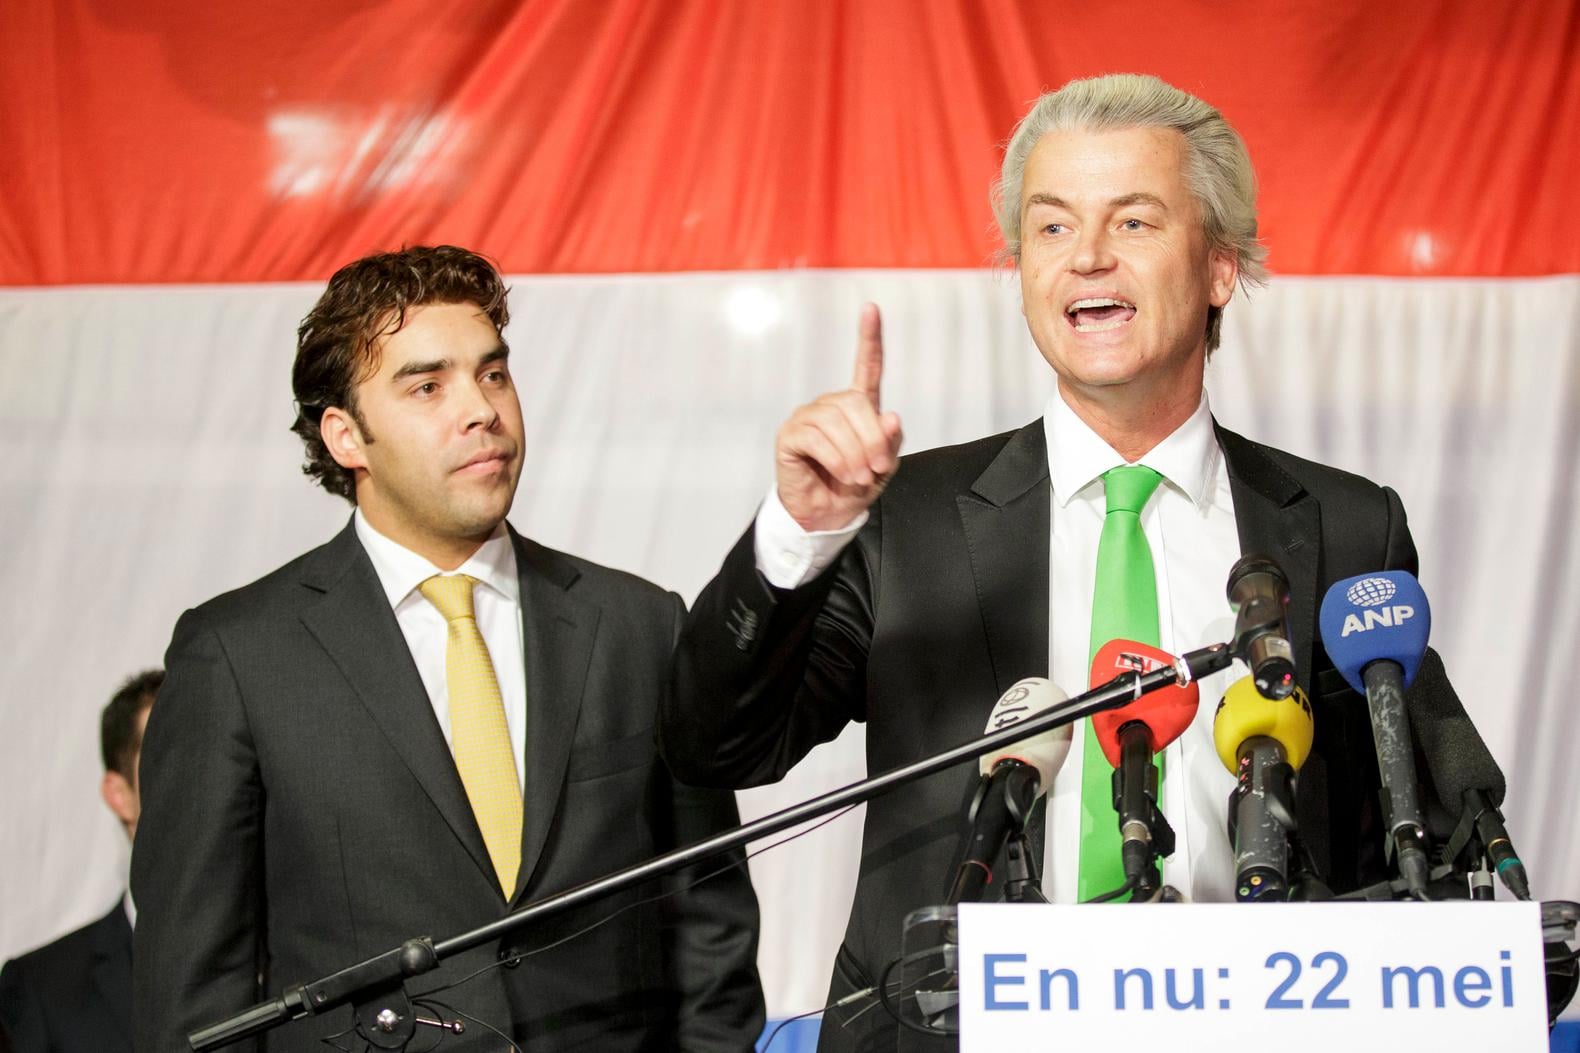 Drie vragen over het 'Minder Marokkanen'-proces van Wilders, nu hoger beroep vandaag begint